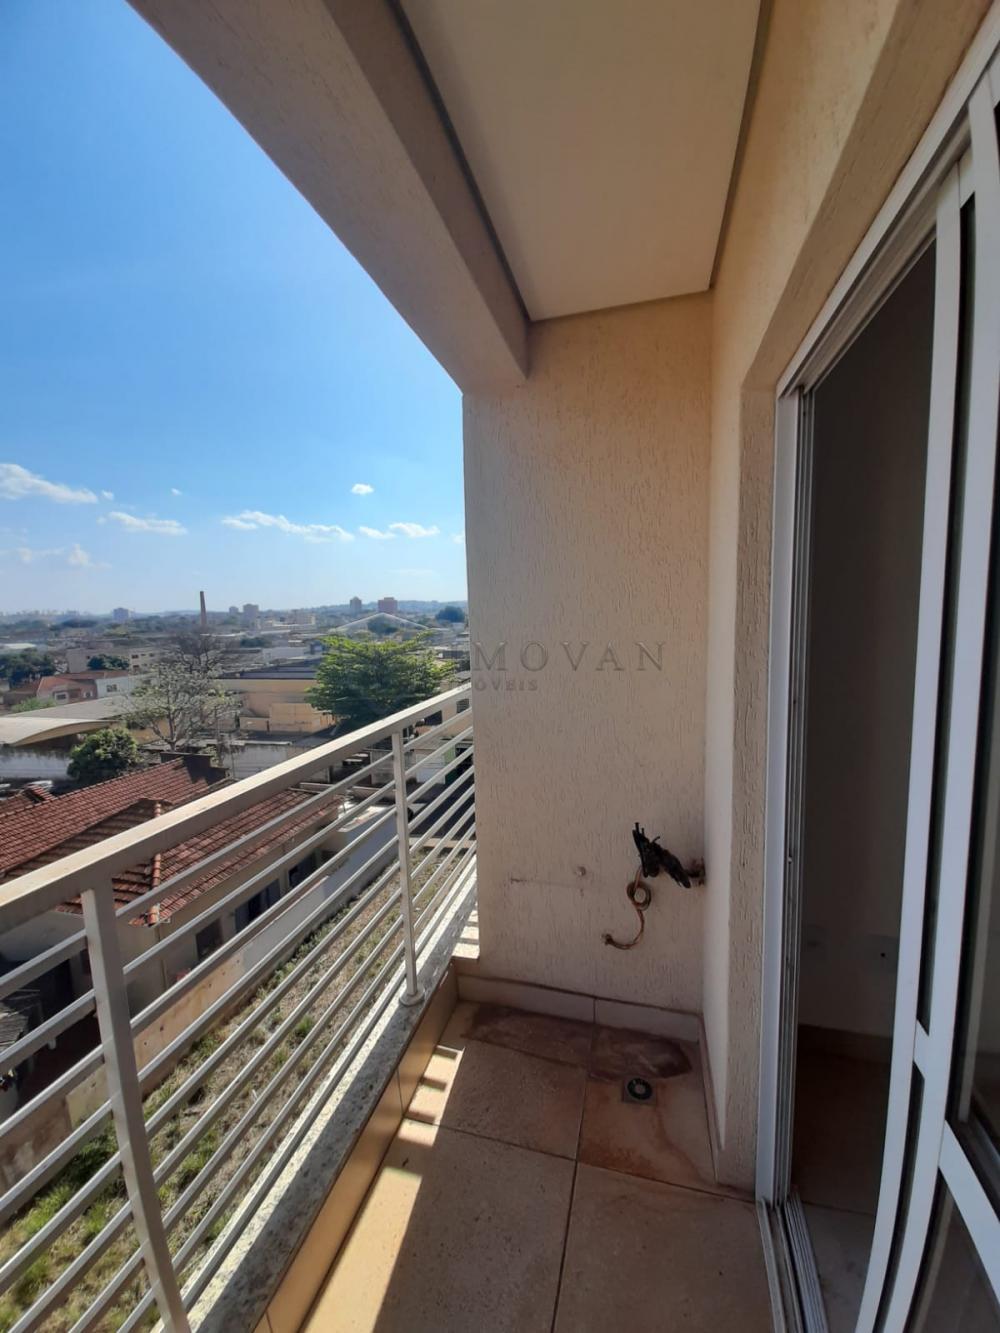 Comprar Apartamento / Padrão em Ribeirão Preto R$ 195.000,00 - Foto 9